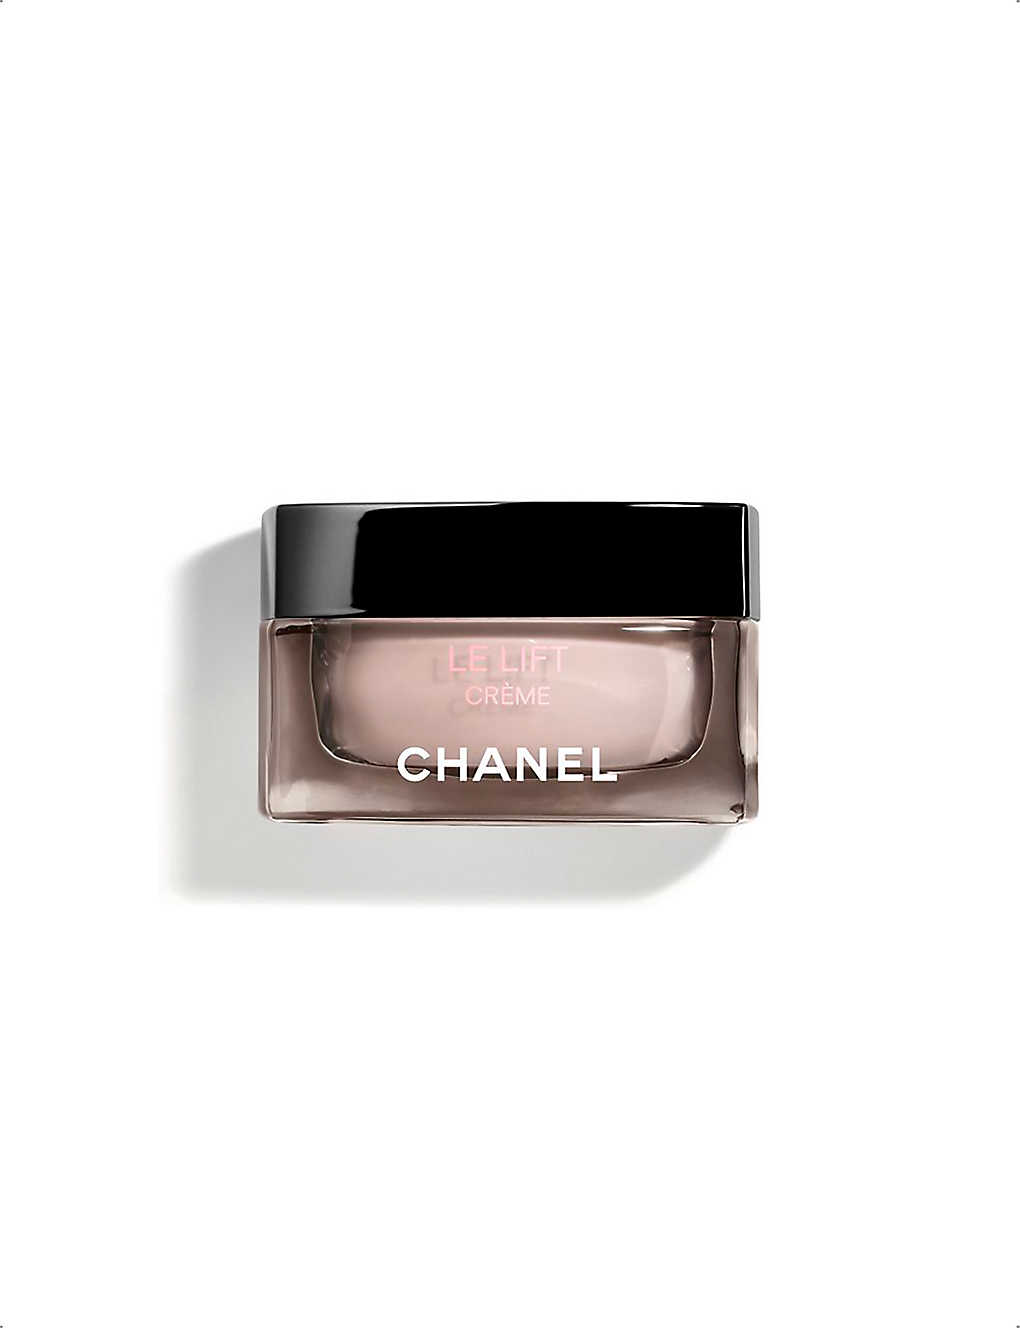 Chanel Le Lift Crème